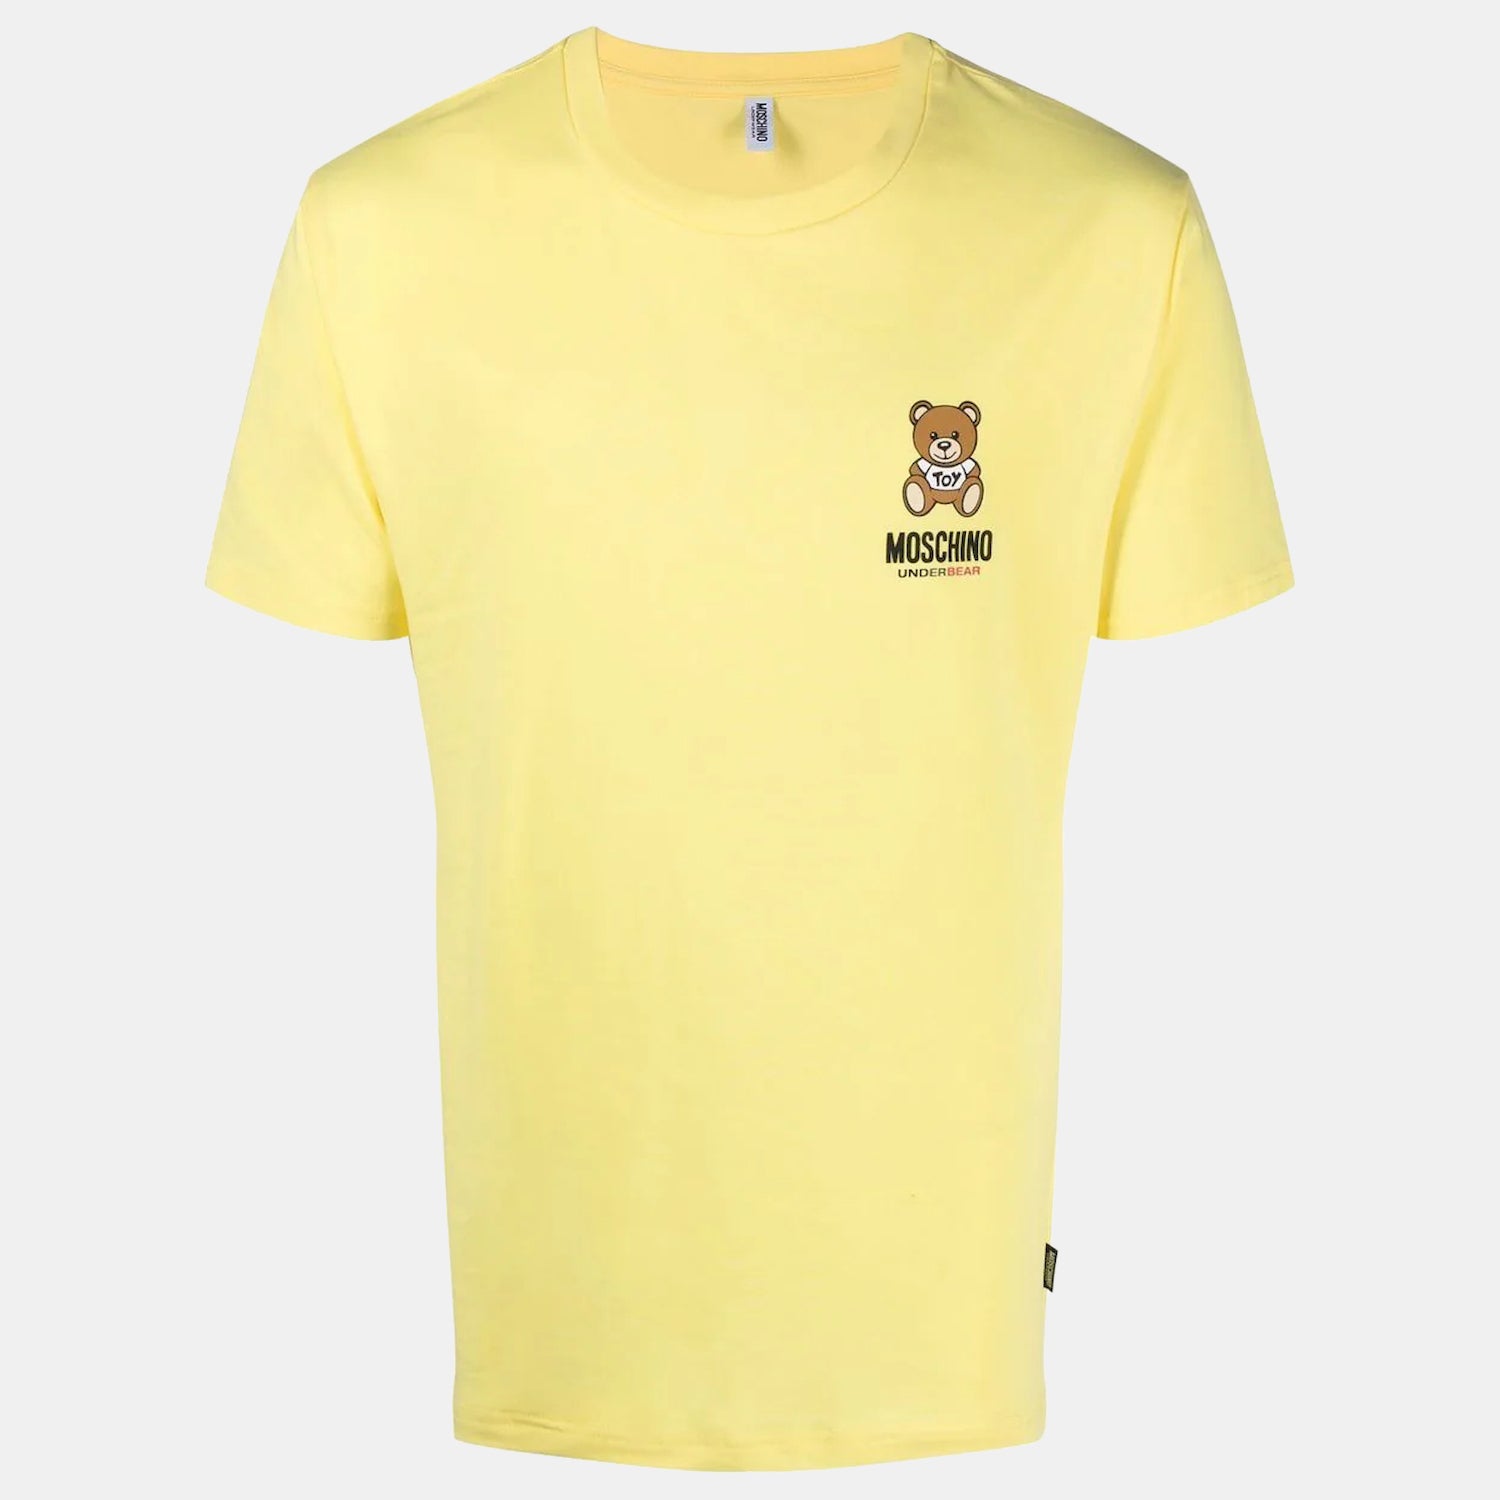 Moschino T Shirt A0784 4410 Yellow Amarelo_shot1